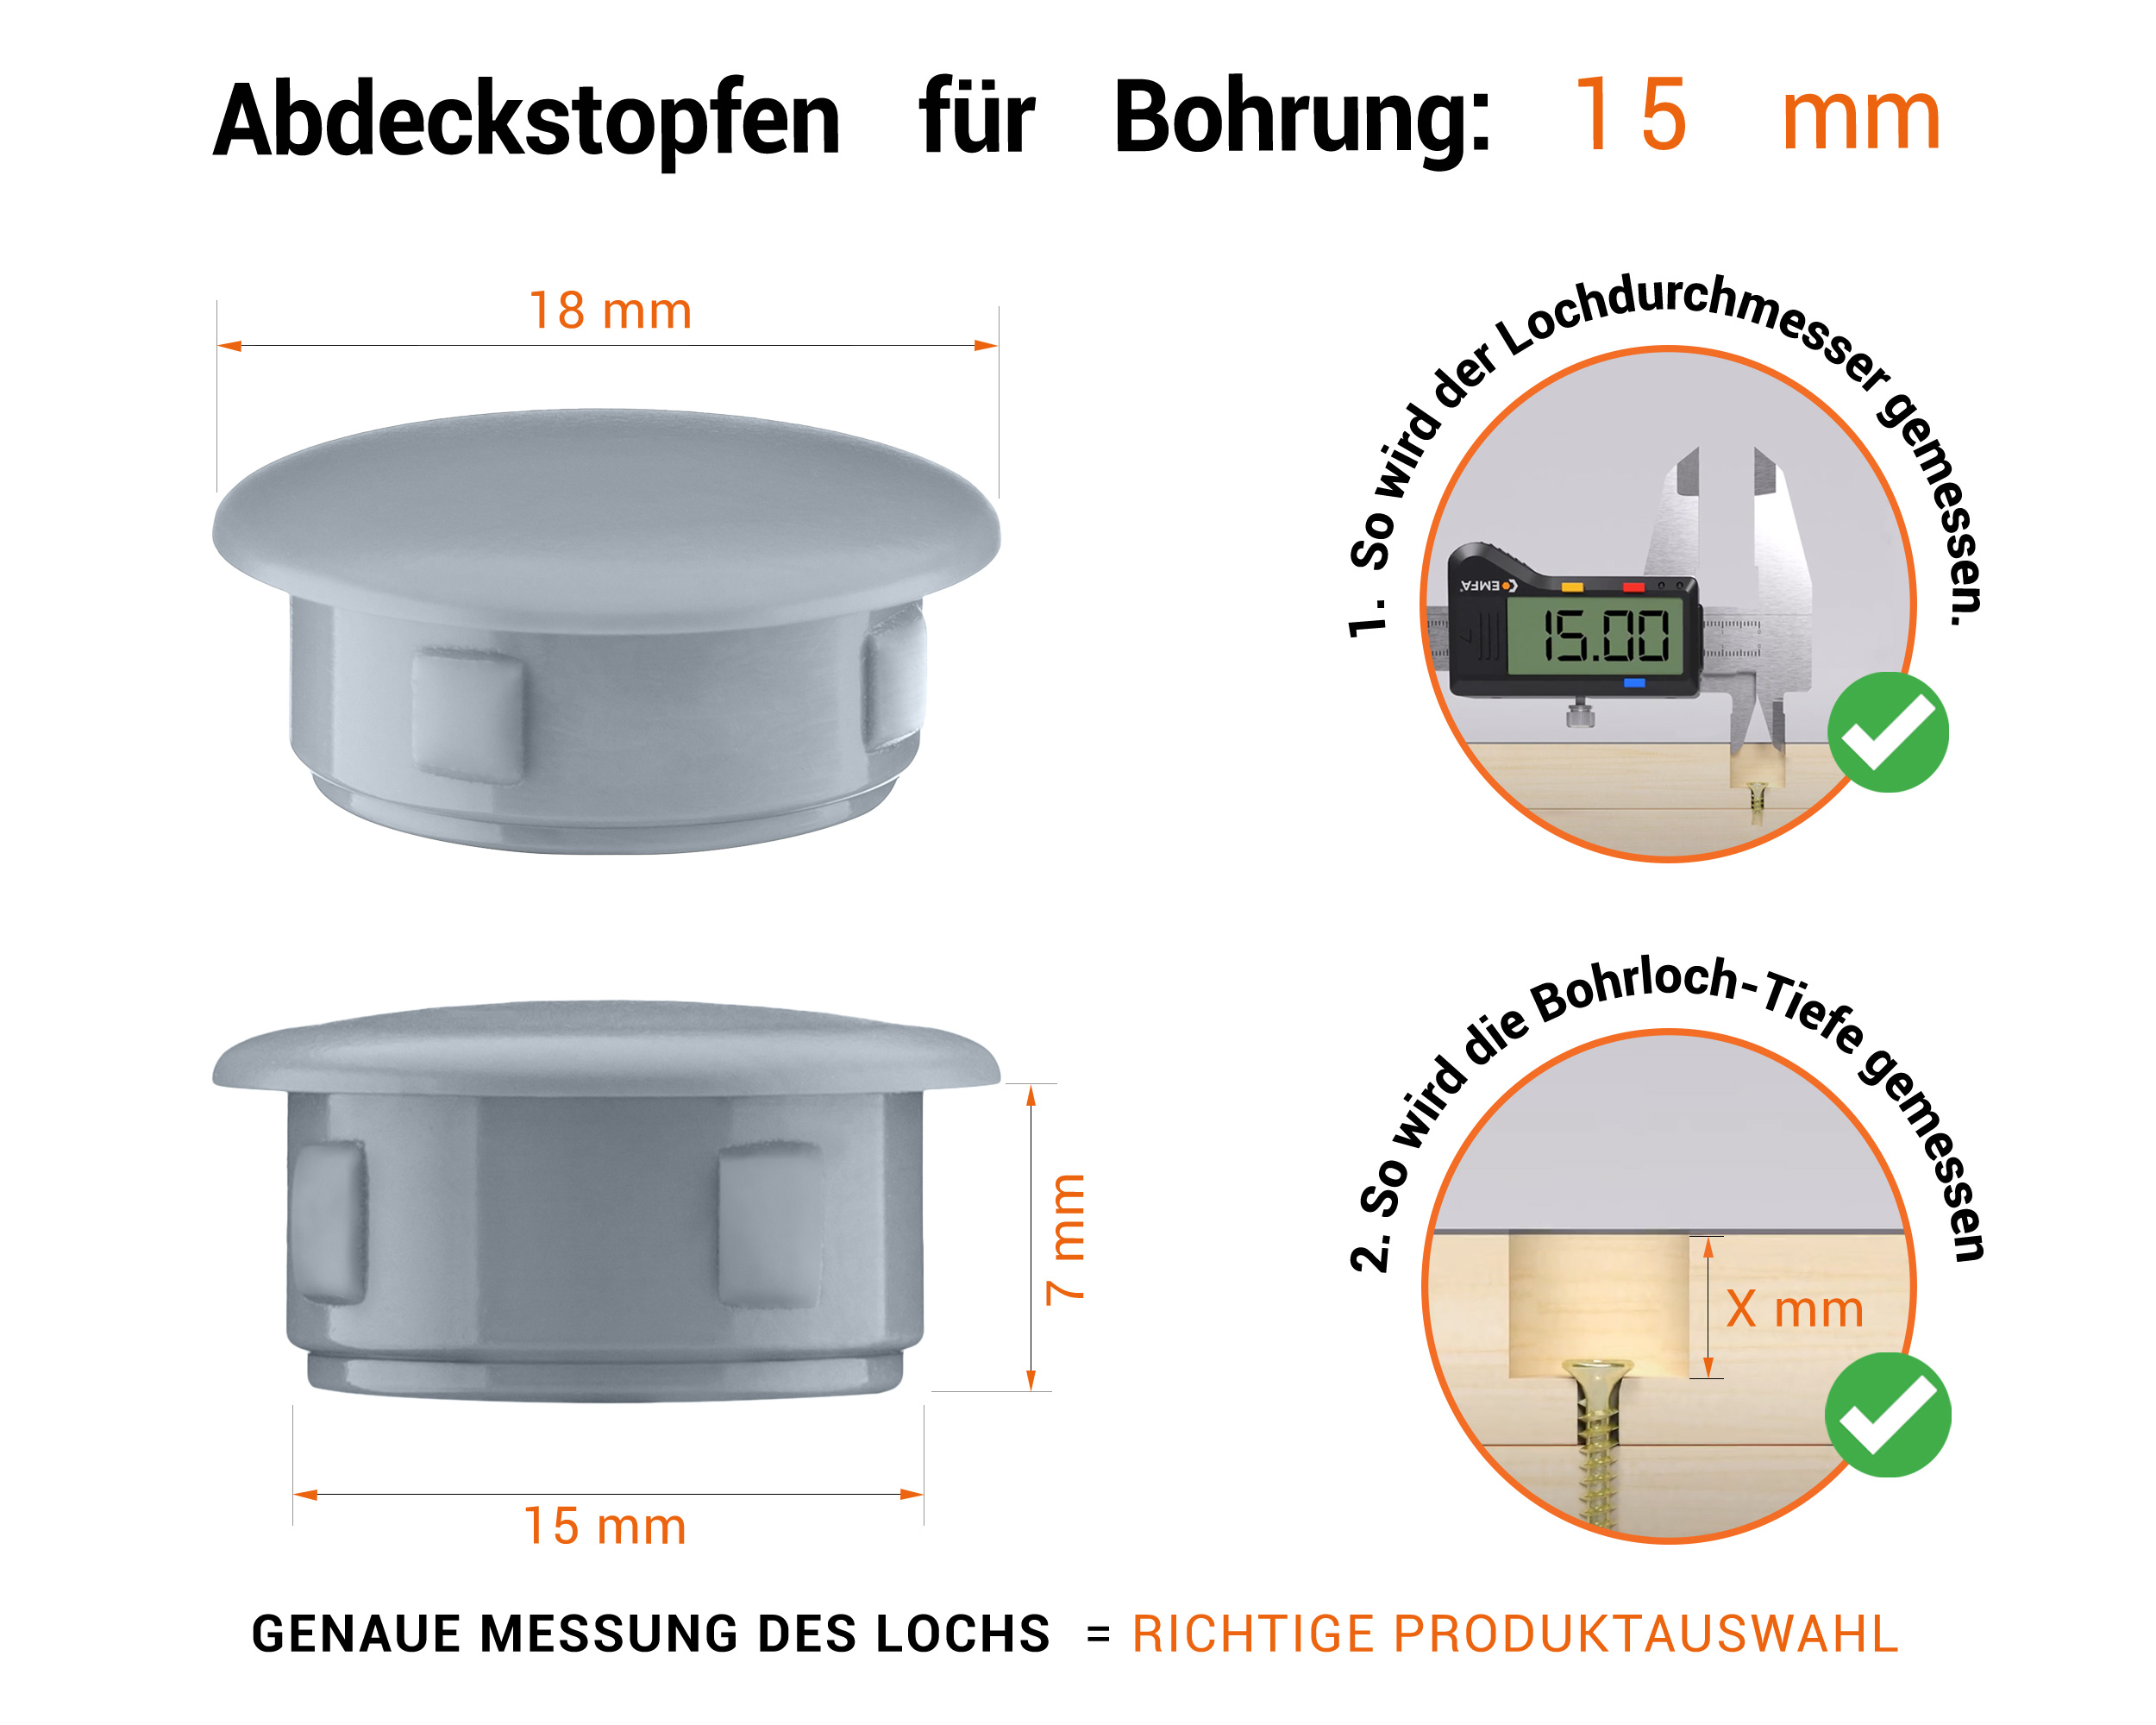 Graue Blindstopfen aus Kunststoff für Bohrung 15 mmmm mit technischen Abmessungen und Anleitung für korrekte Messung